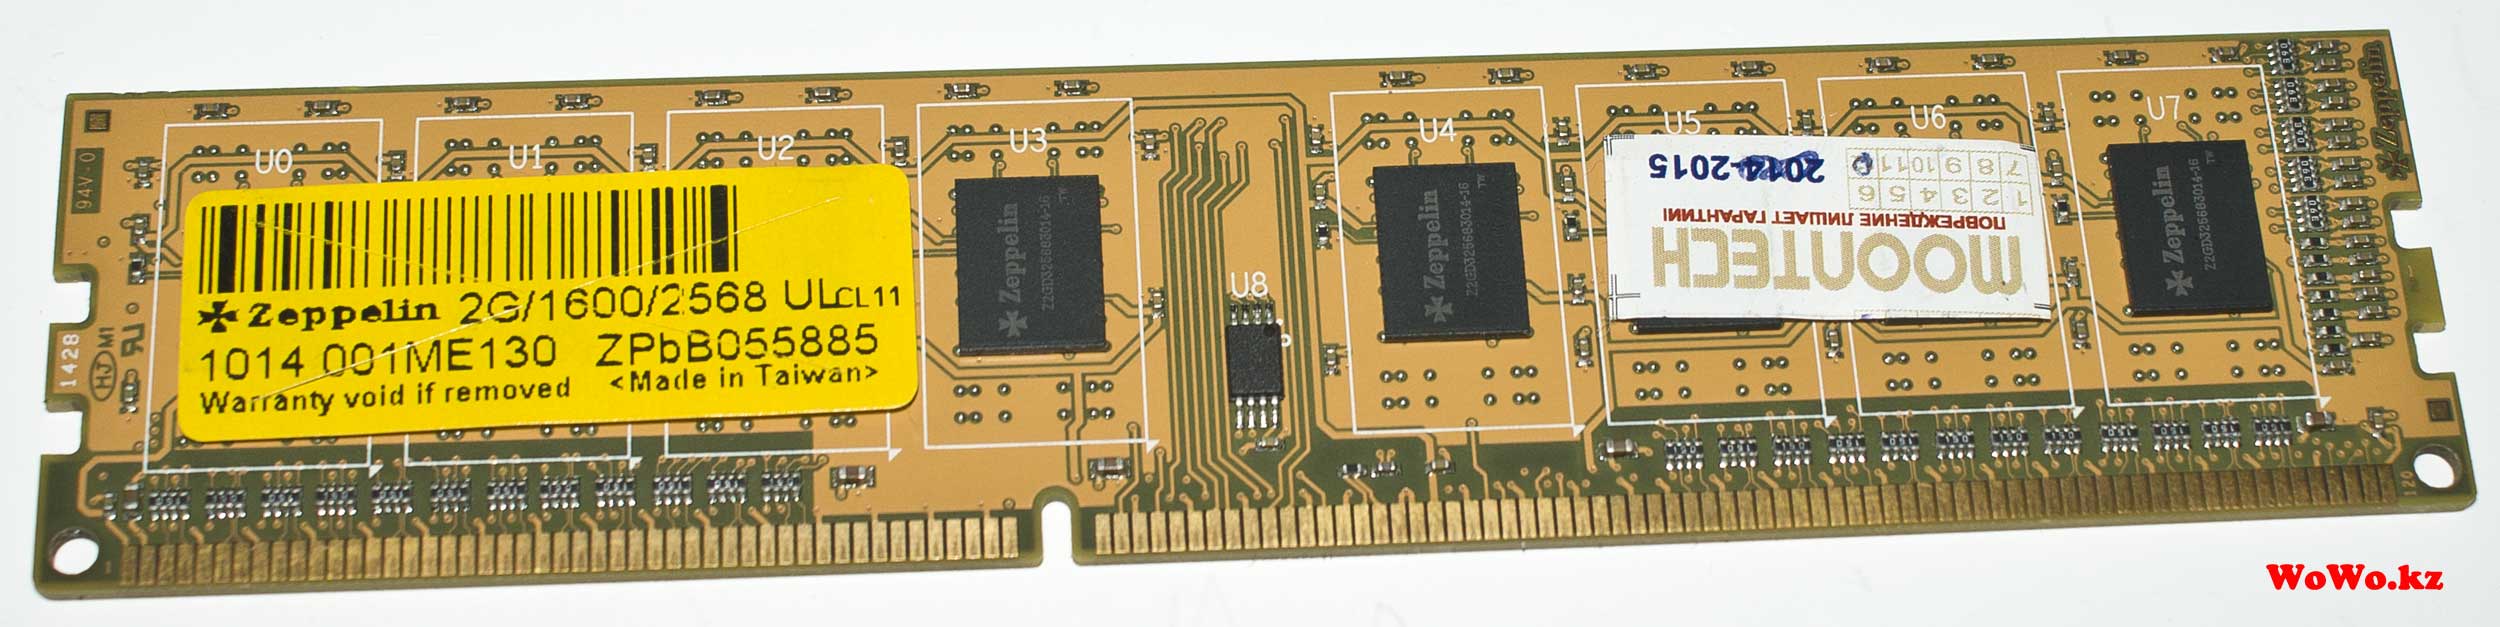 Zeppelin 2G/1600/2568 ULcl11 ОЗУ для ПК DDR3 стоит ли покупать, какое качество